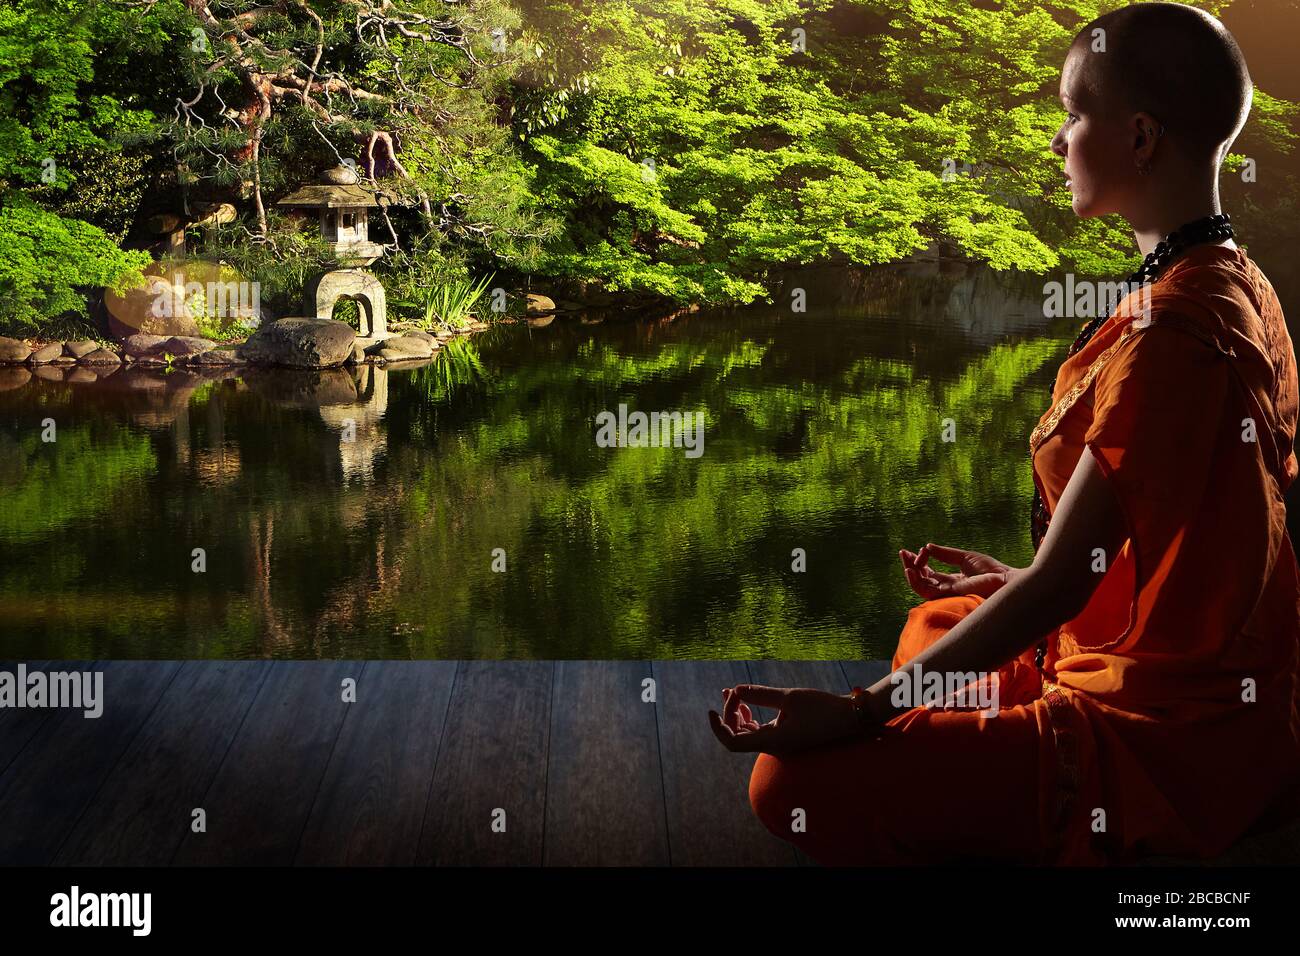 Schöne junge Frau in orange Robe sitzt in Meditation im Garten auf Holzboden..Meditation ist der beste Weg, um das komplexeste Problem zu lösen. Stockfoto